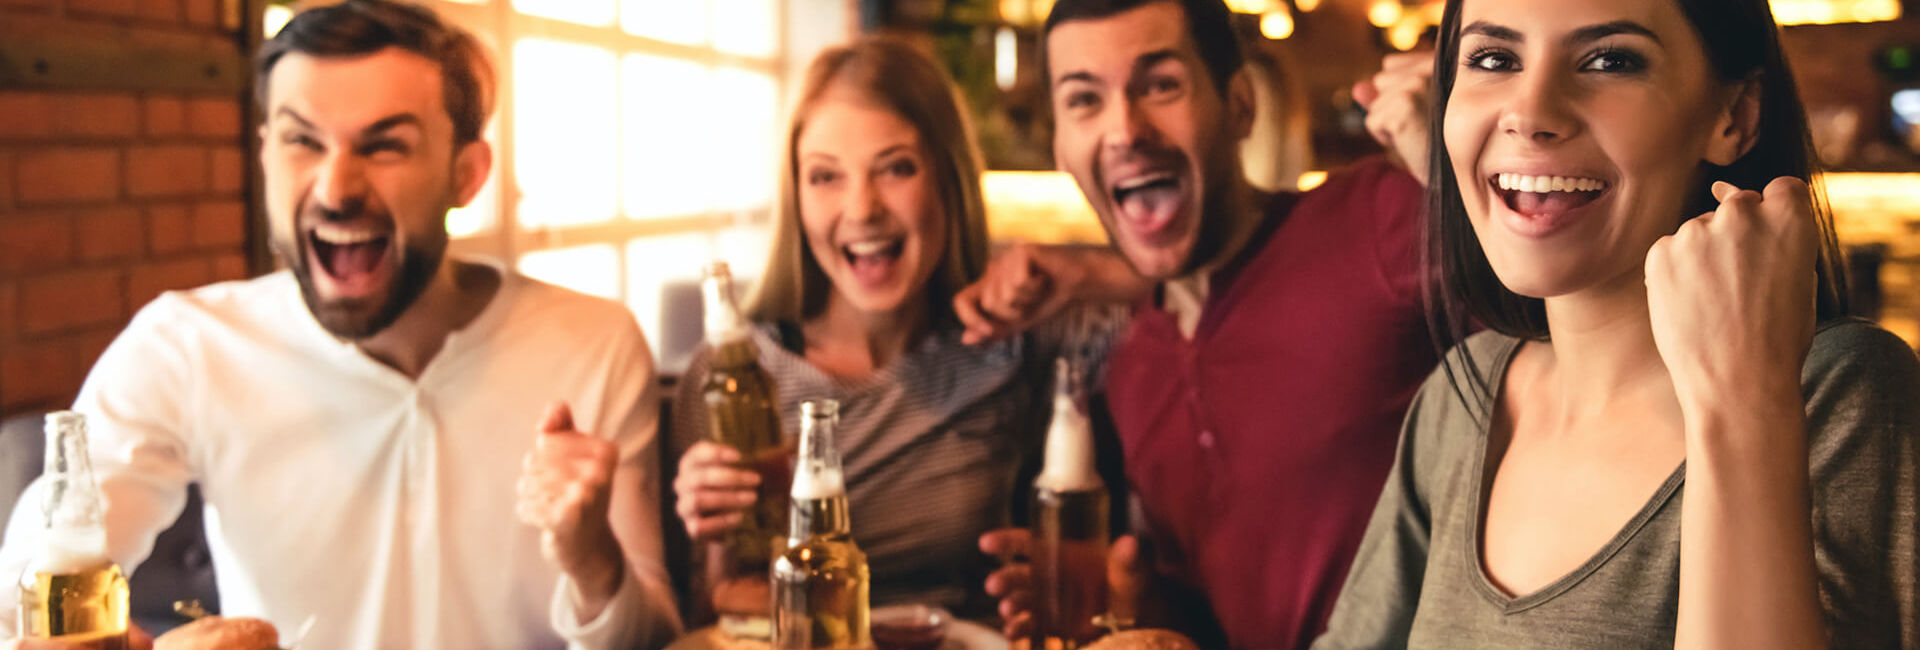 Twee vrouwen en twee mannen juichen en drinken bier - Pubquiz